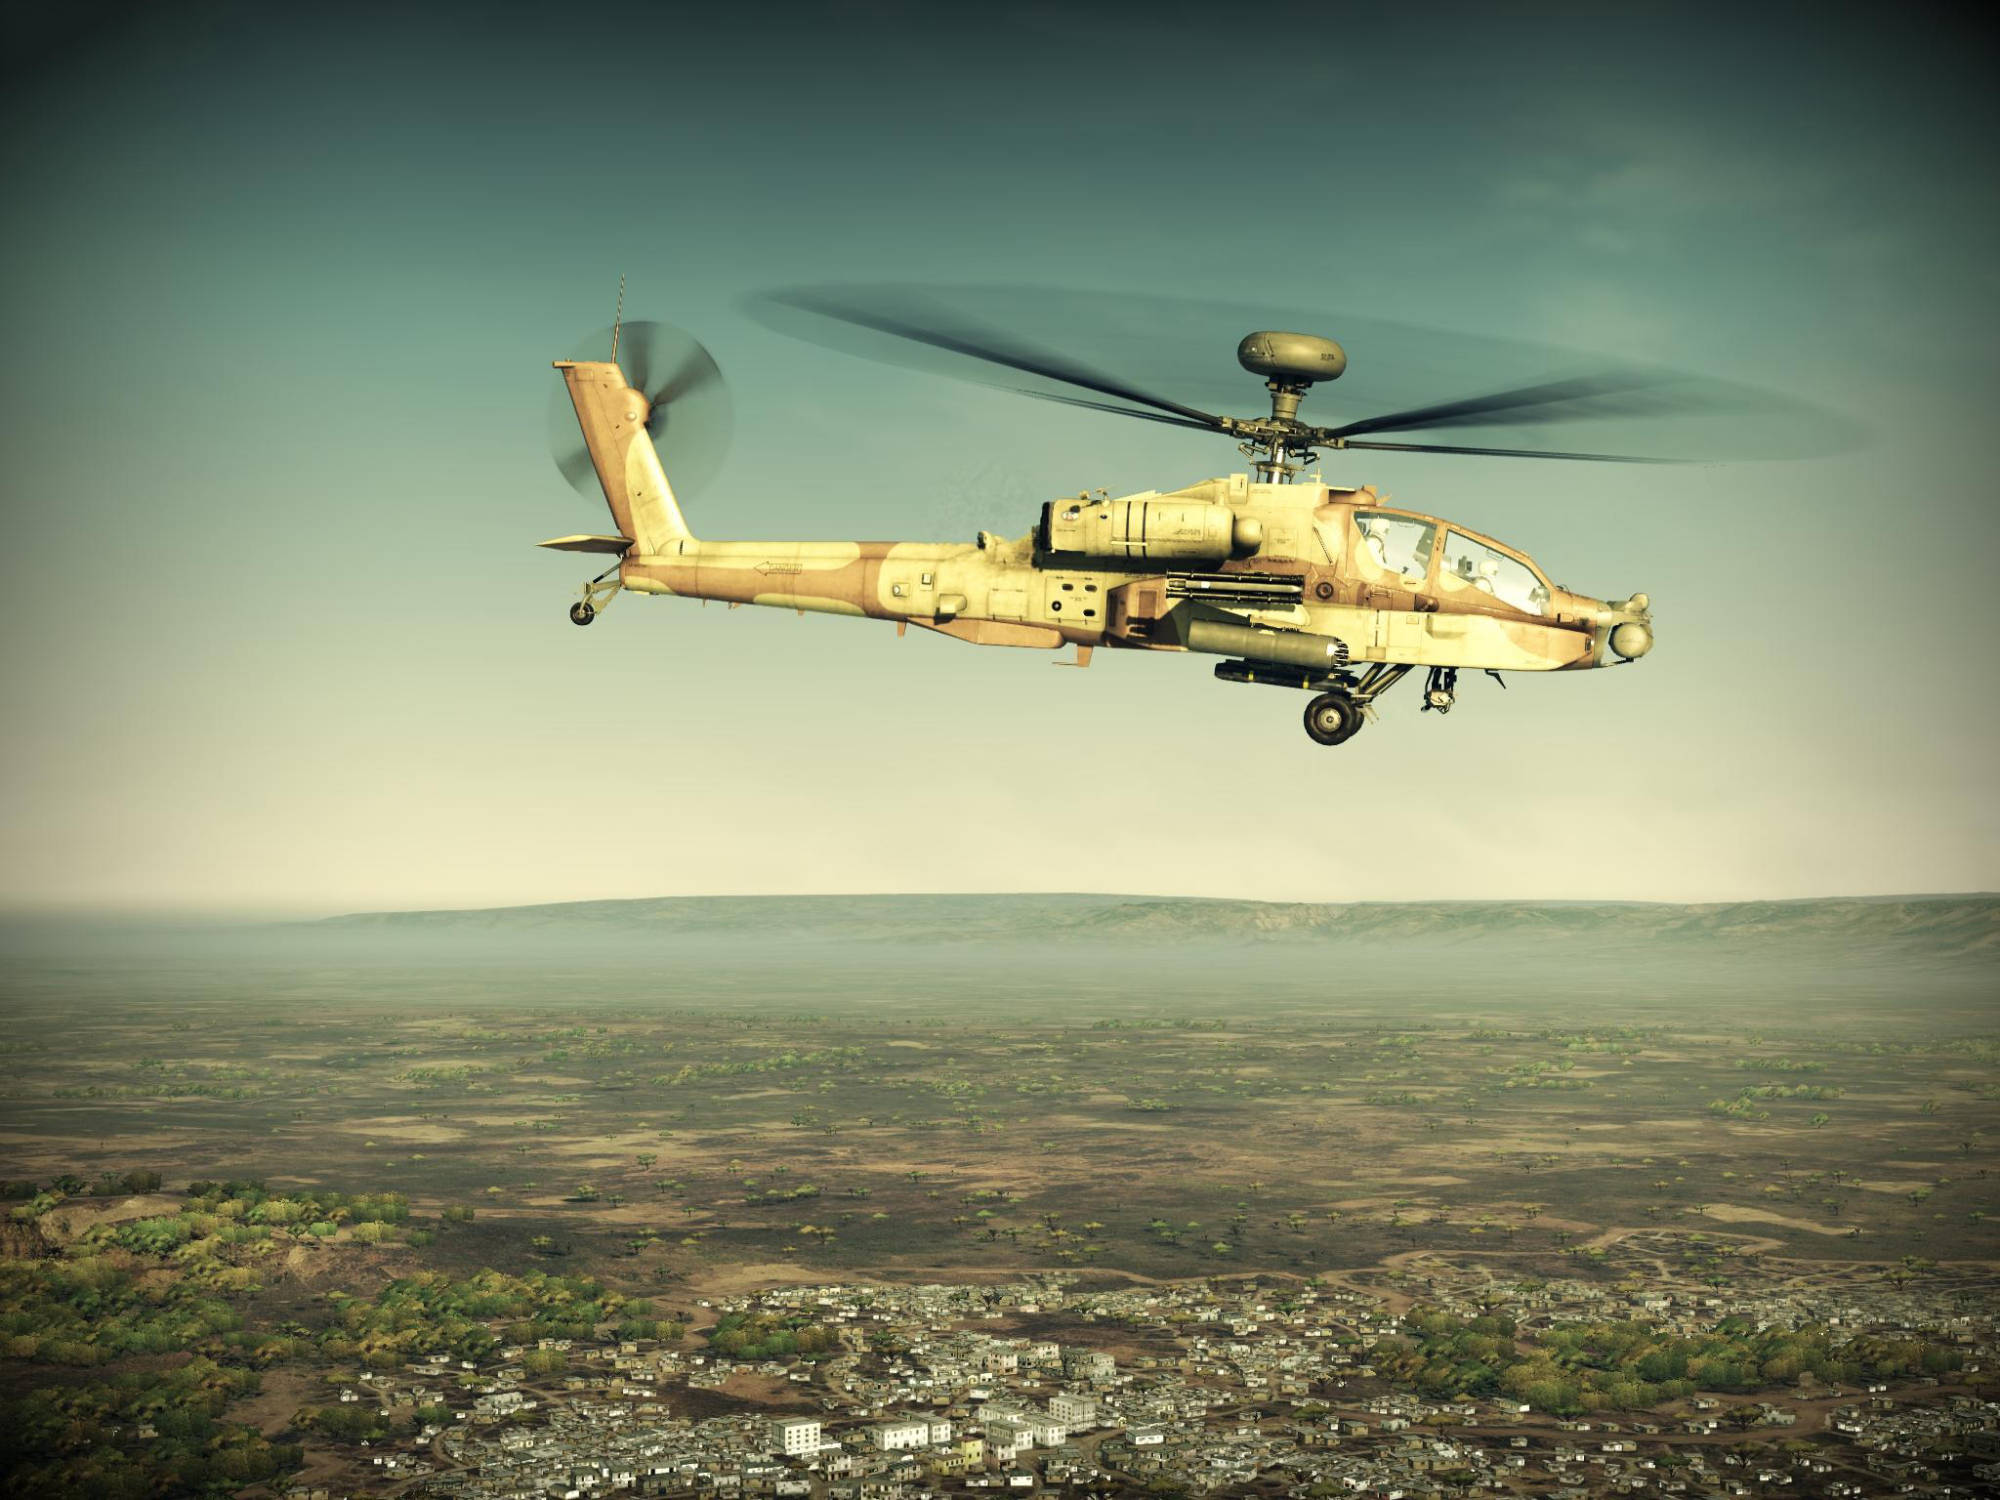 原创美军阿帕奇号称最强直升机一年或能量产40架性能领先全球国家